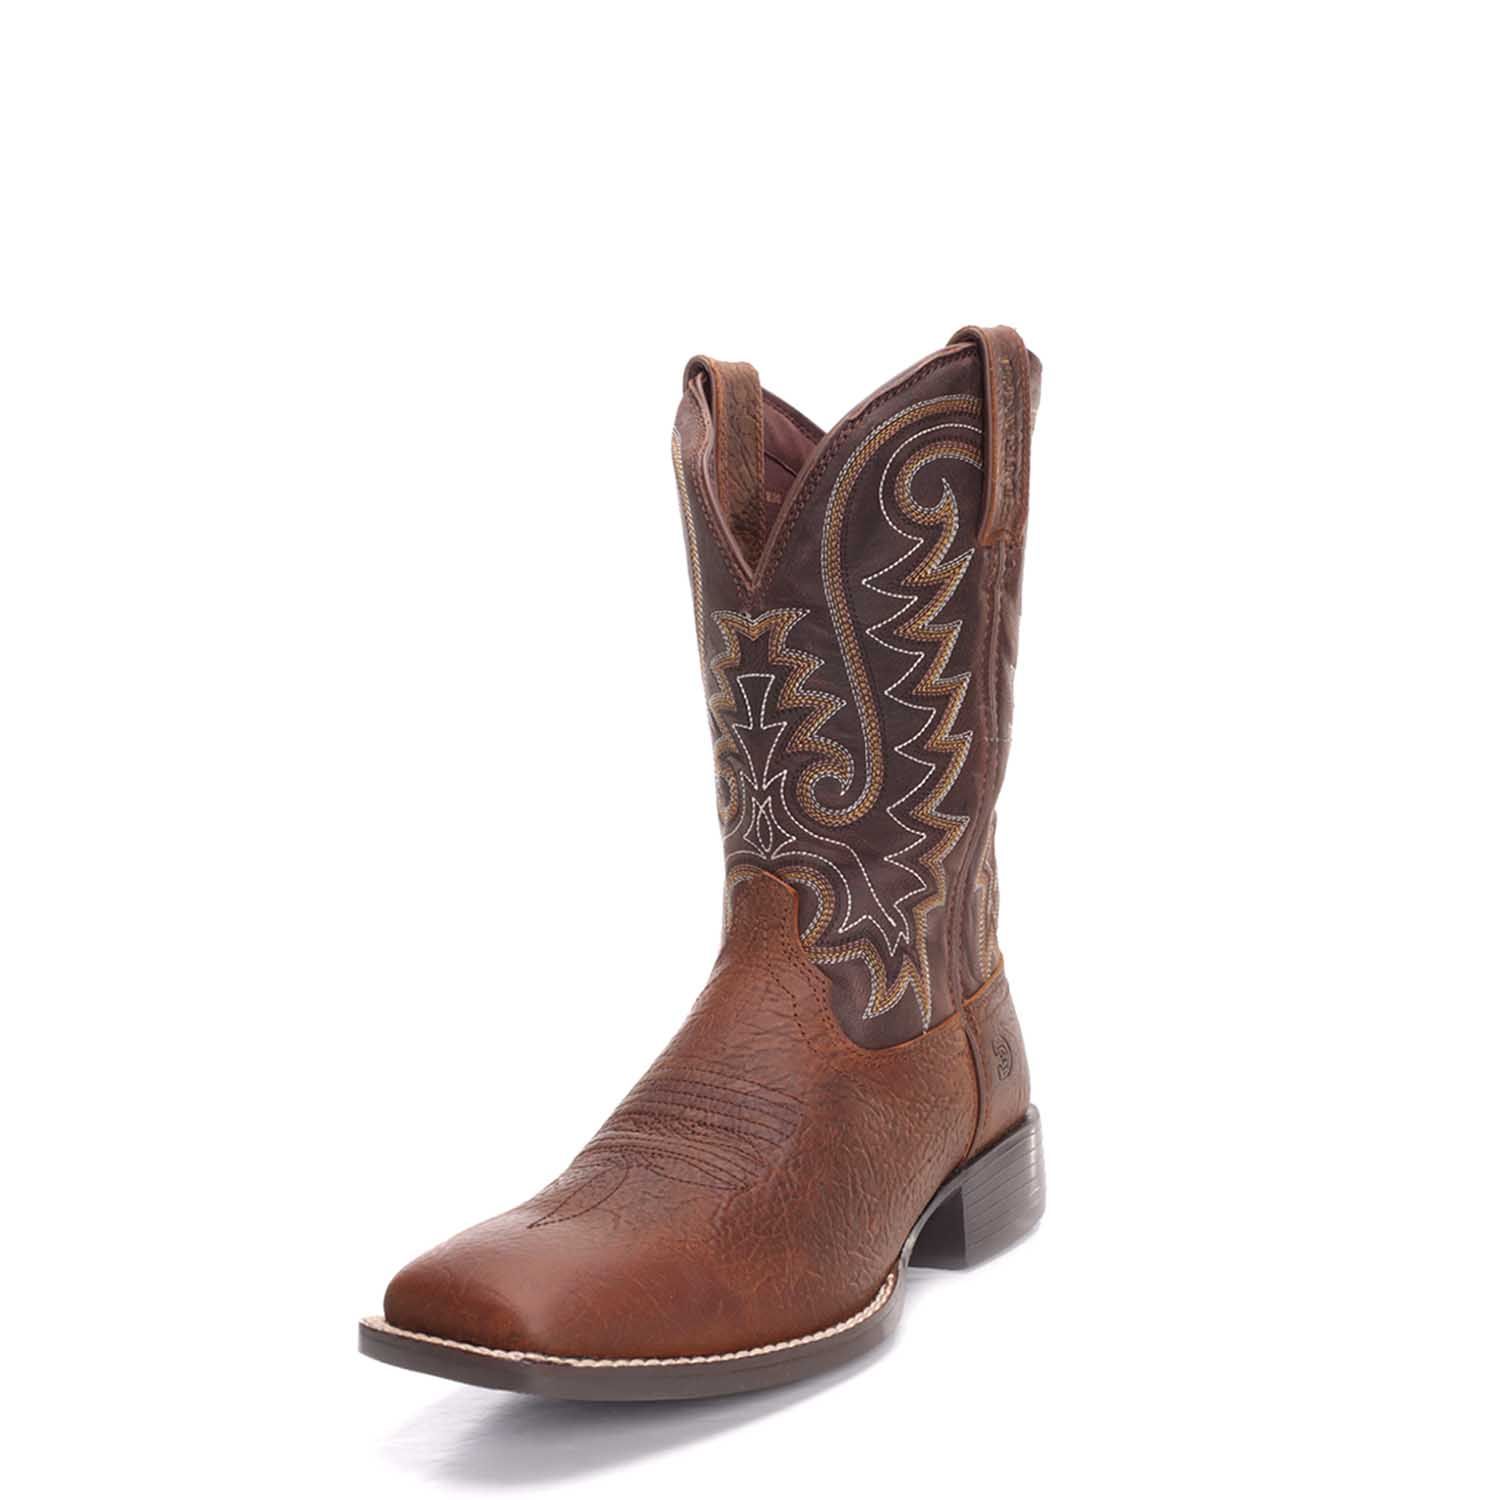 Durango Rebel Square Toe   Mens  Western Cowboy Boots   Mid Calf